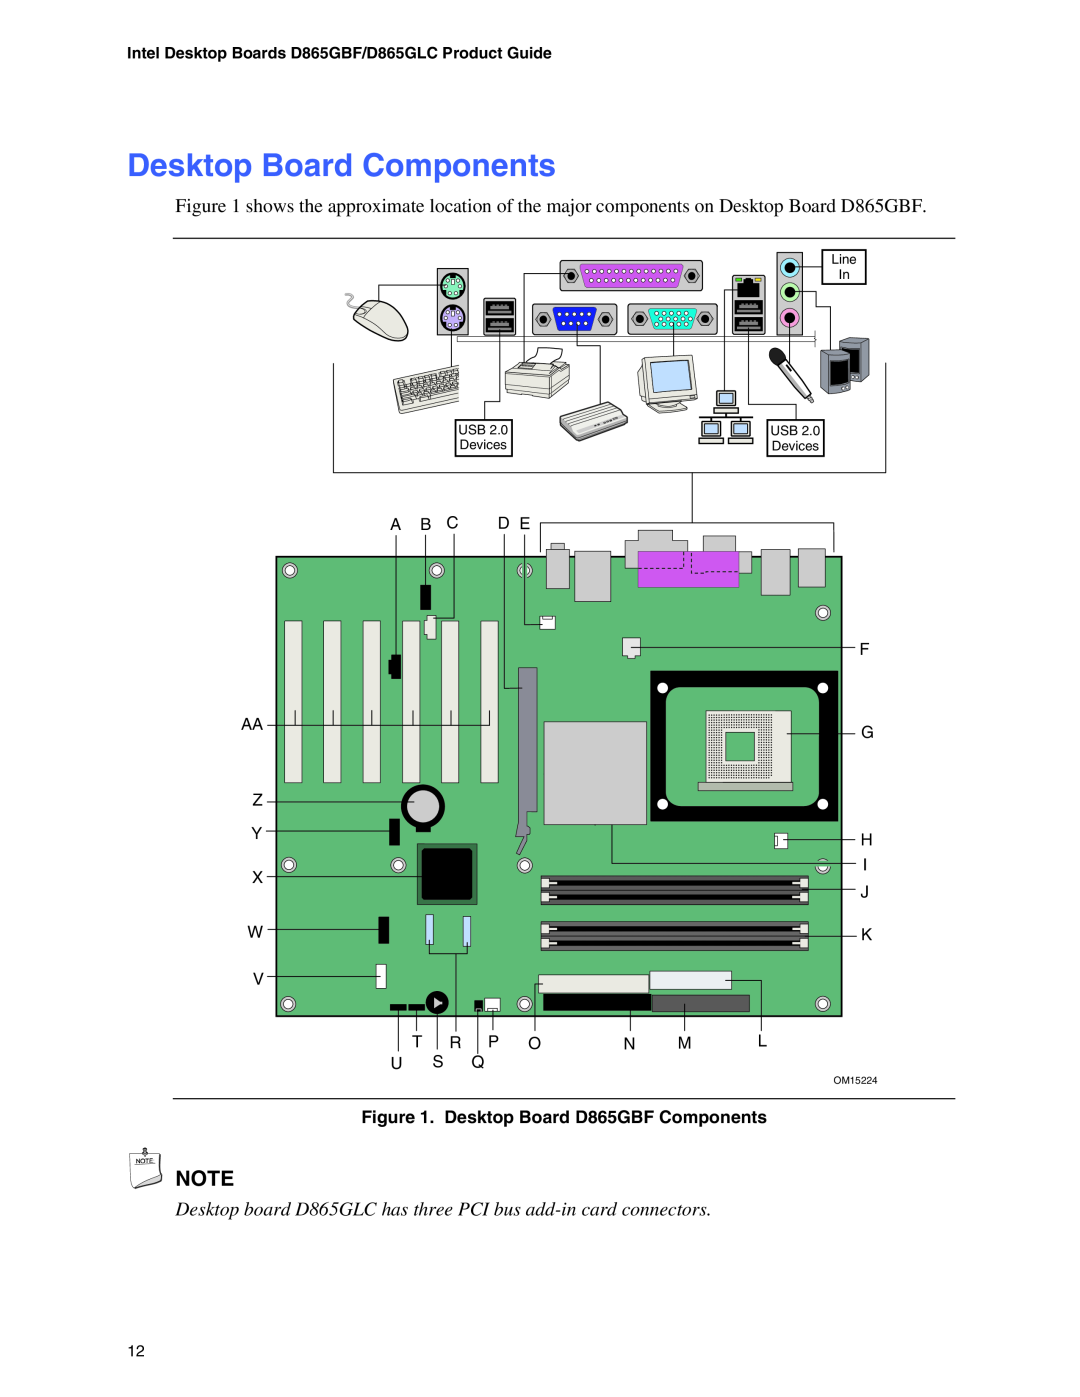 Intel D865GLC manual Desktop Board Components, Desktop Board D865GBF Components 